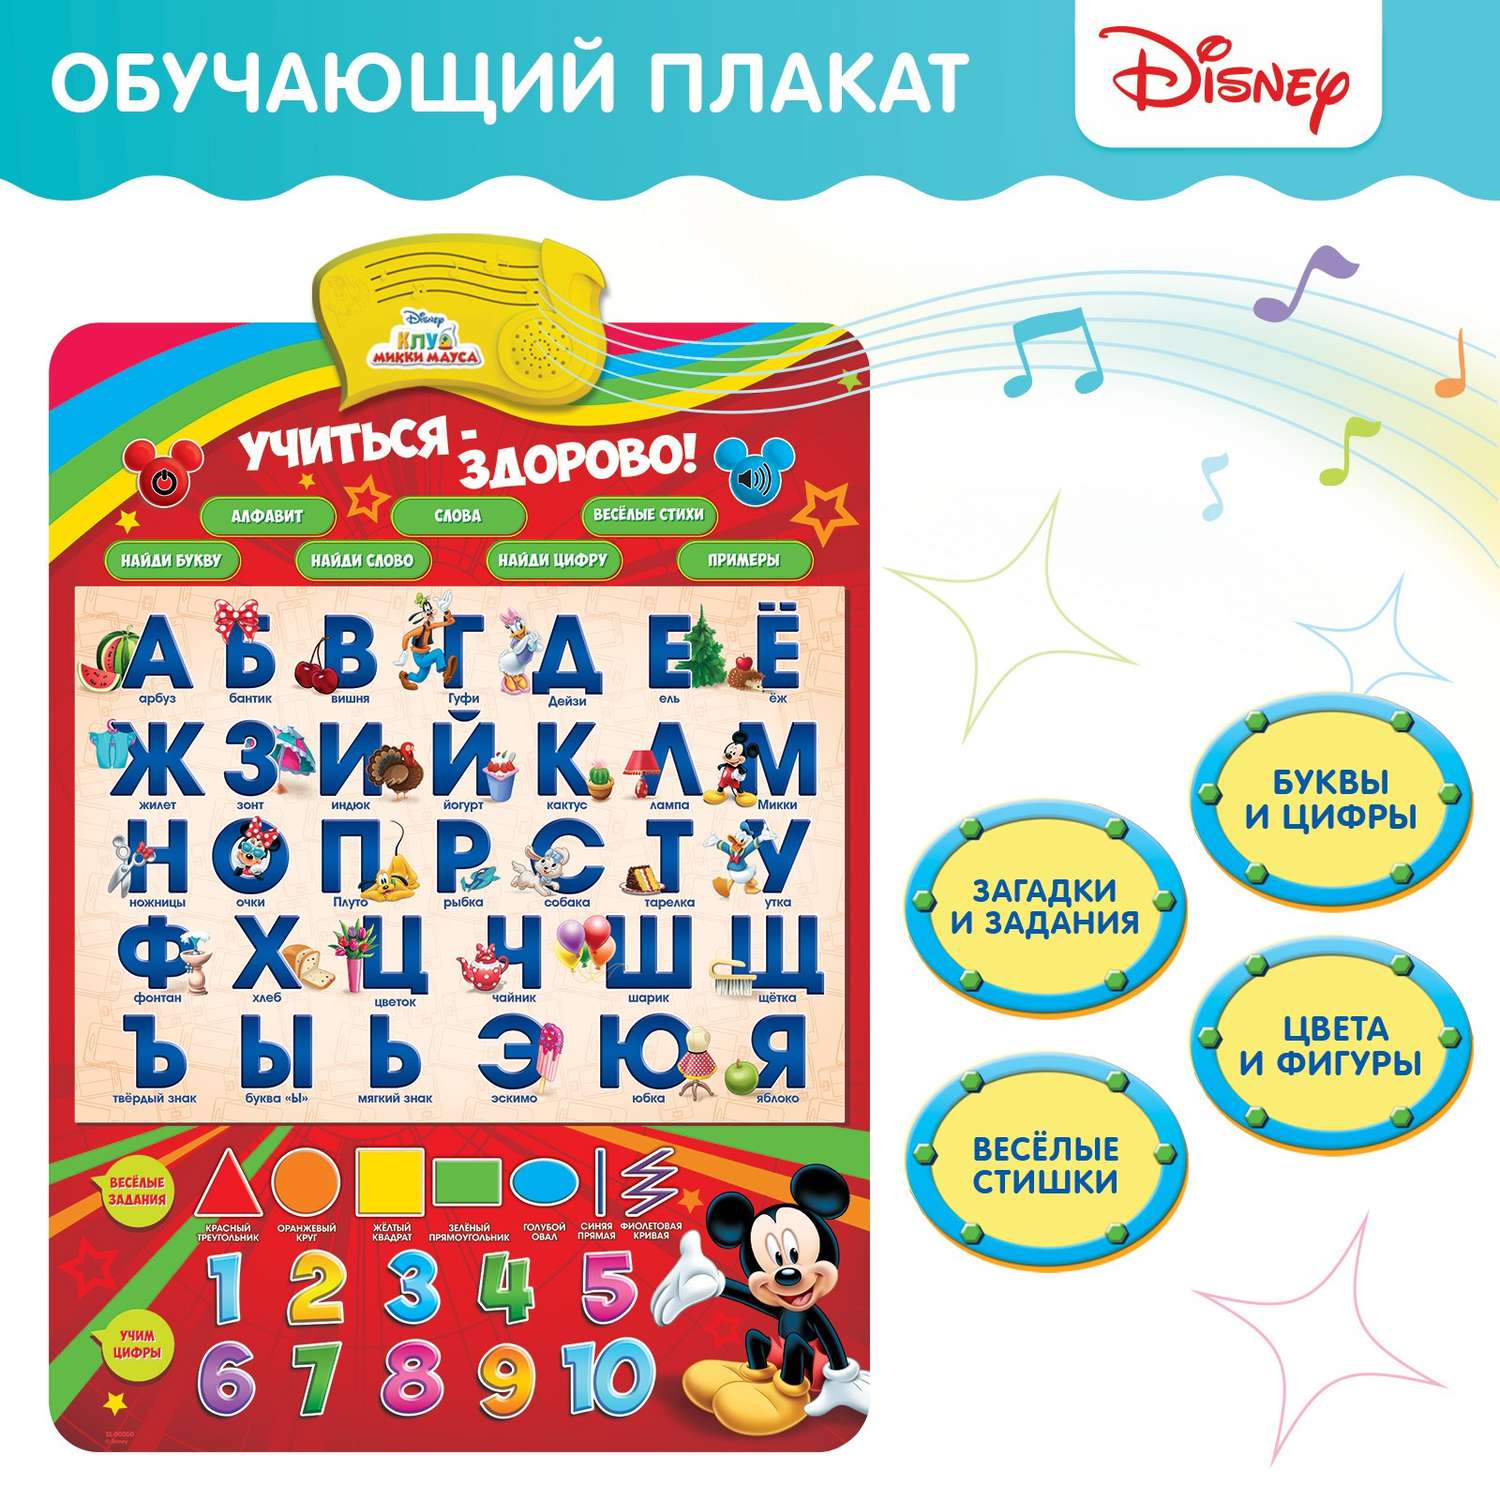 Плакат Disney электронный « Микки Маус и друзья: Учиться-здорово!». русская озвучка - фото 2